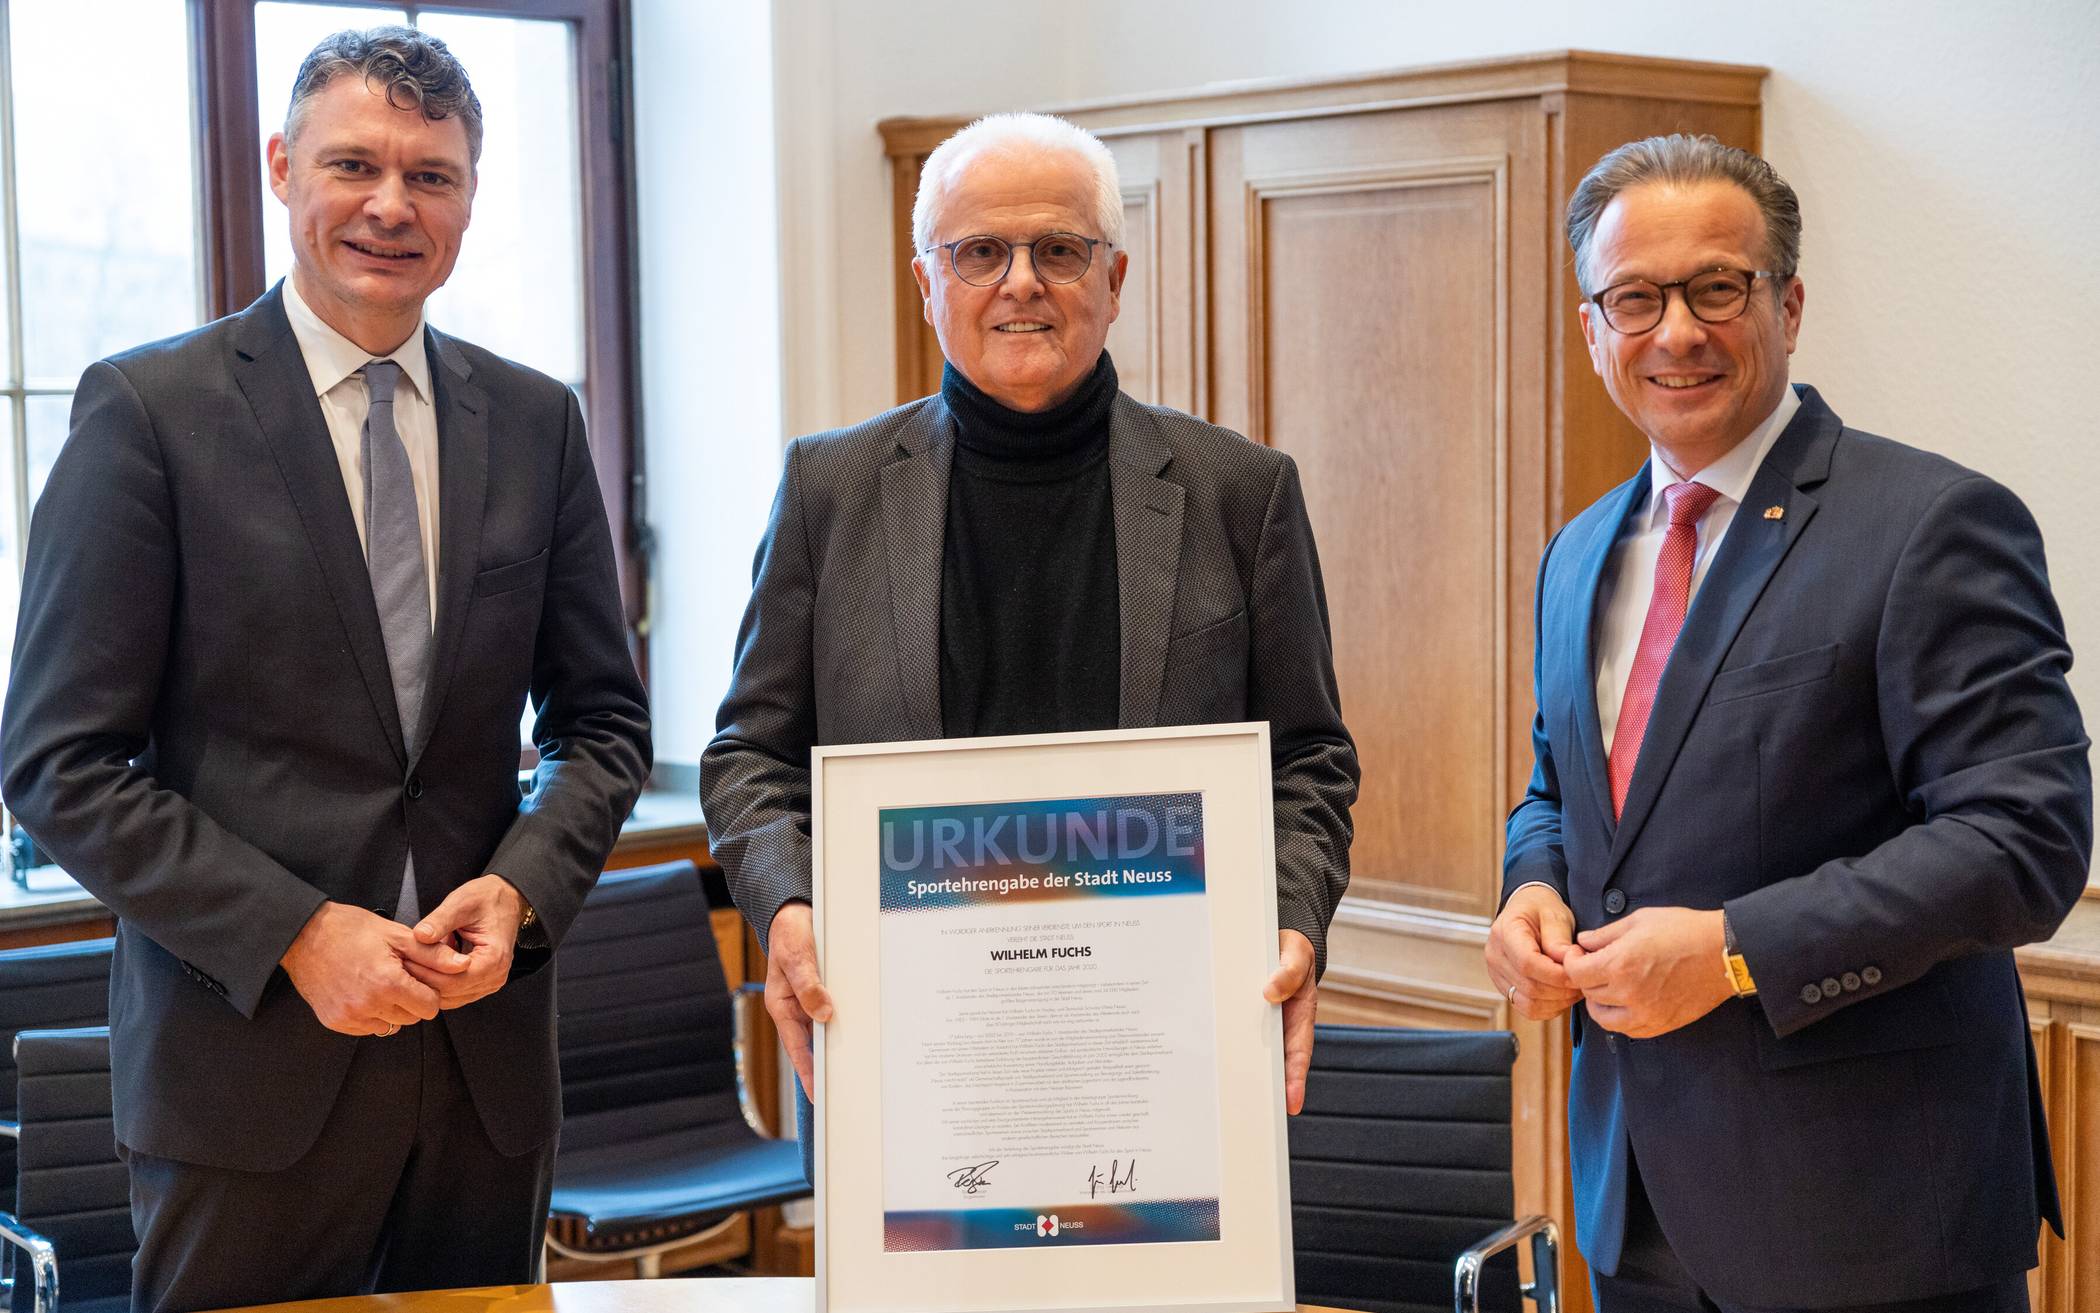  Wilhelm Fuchs (Mitte) freut sich über den Sportehrenpreis der Stadt Neuss, überreicht vom Vorsitzenden des Sportausschusses Dr. Jörg Geerlings (l.) und Bürgermeister Reiner Breuer.  
  